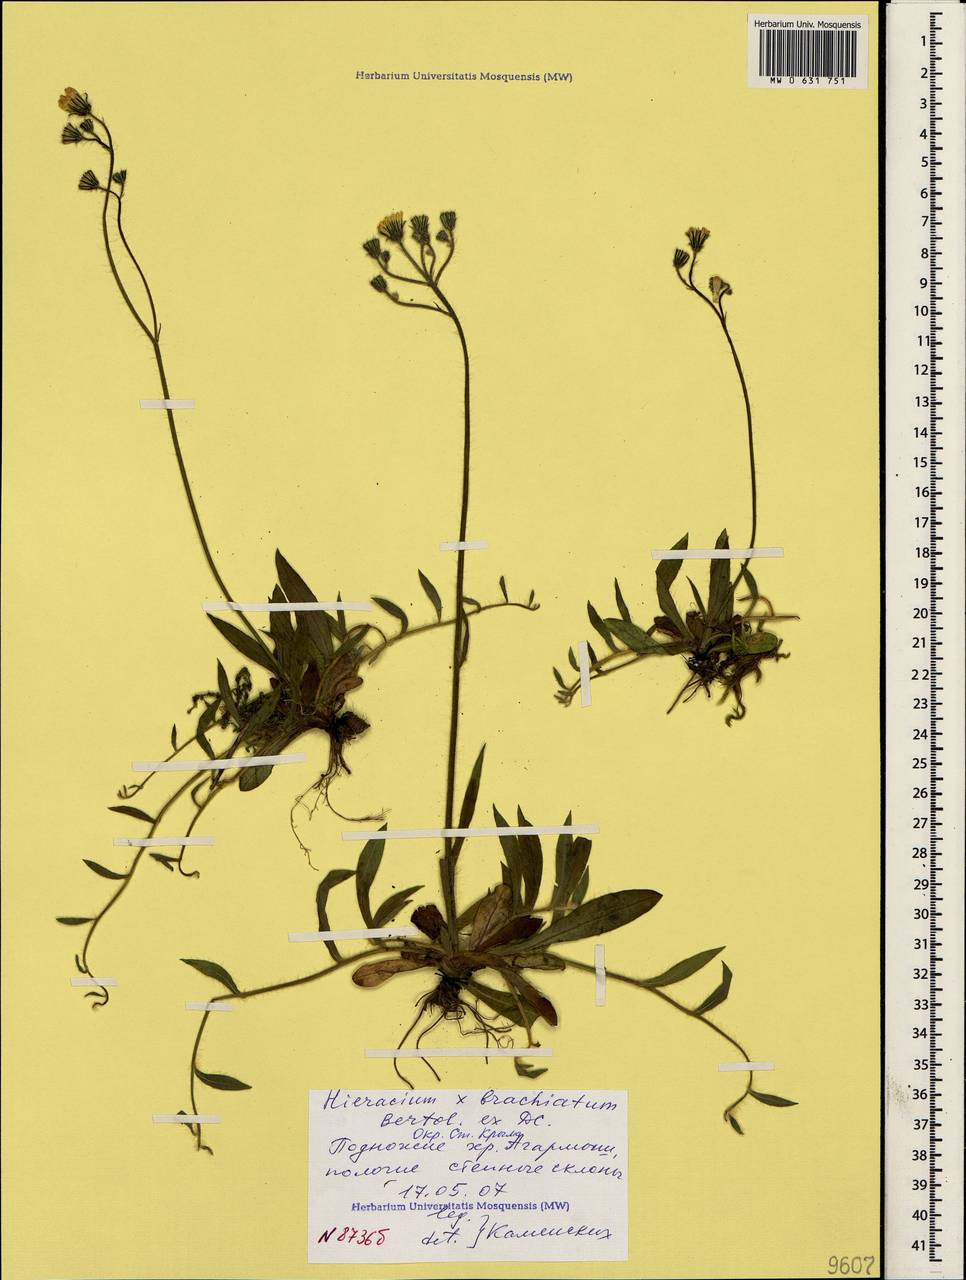 Pilosella acutifolia subsp. acutifolia, Crimea (KRYM) (Russia)